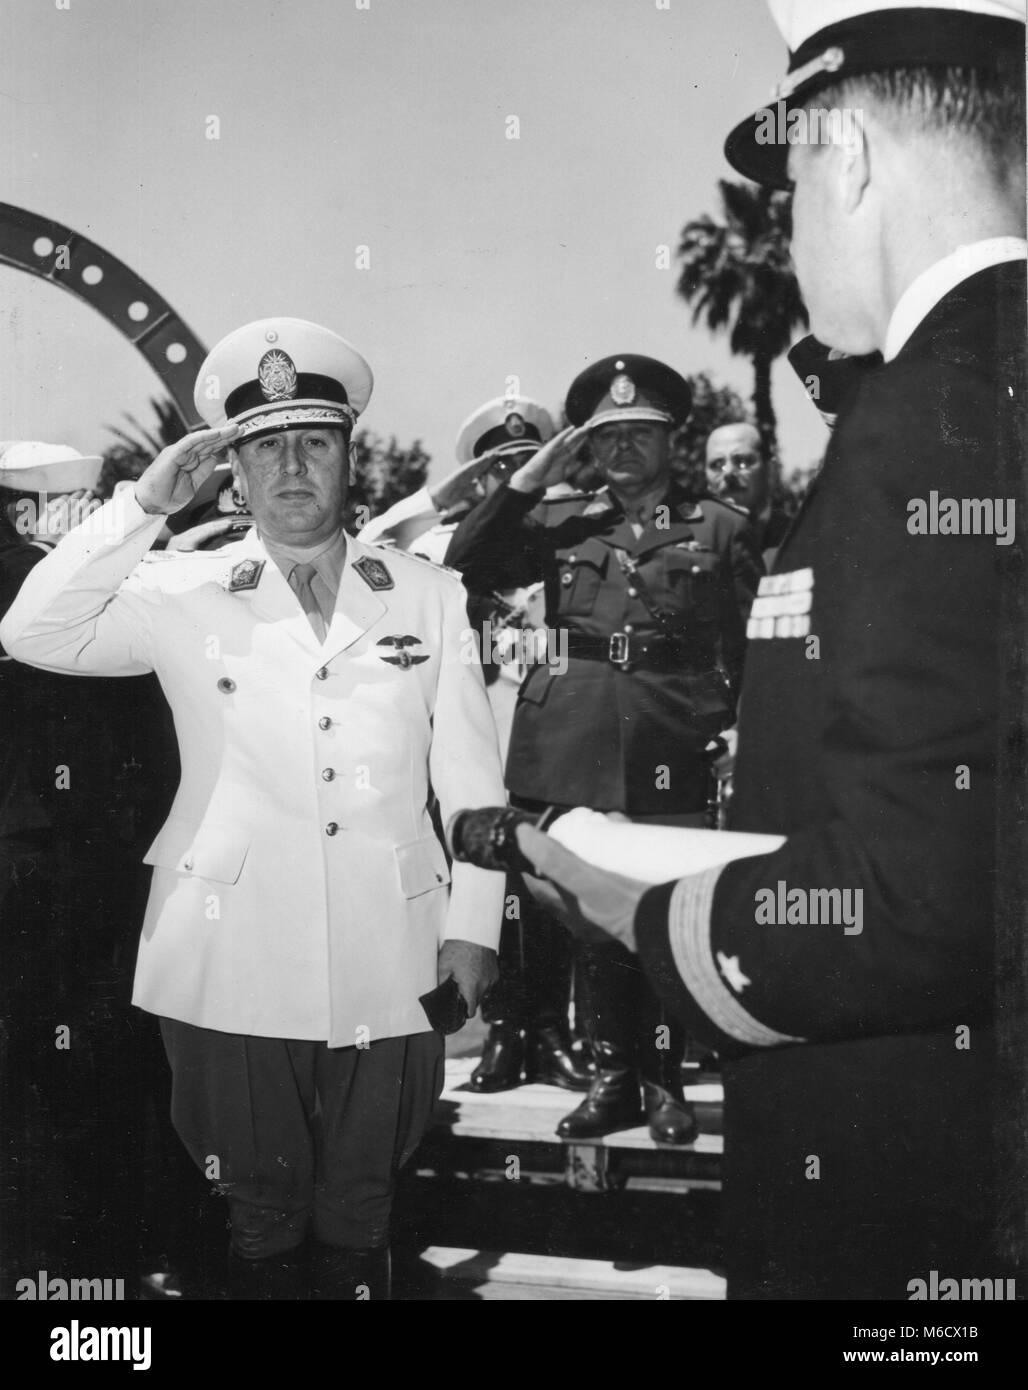 Juan Peron, Präsident von Argentinien, wird gezeigt, empfangenden Ehren, als er an Bord der USS HUNTINGTON auf eine gute Fahrt kam. Buenos Aires, Argentinien, Nov 6, 1948. Stockfoto